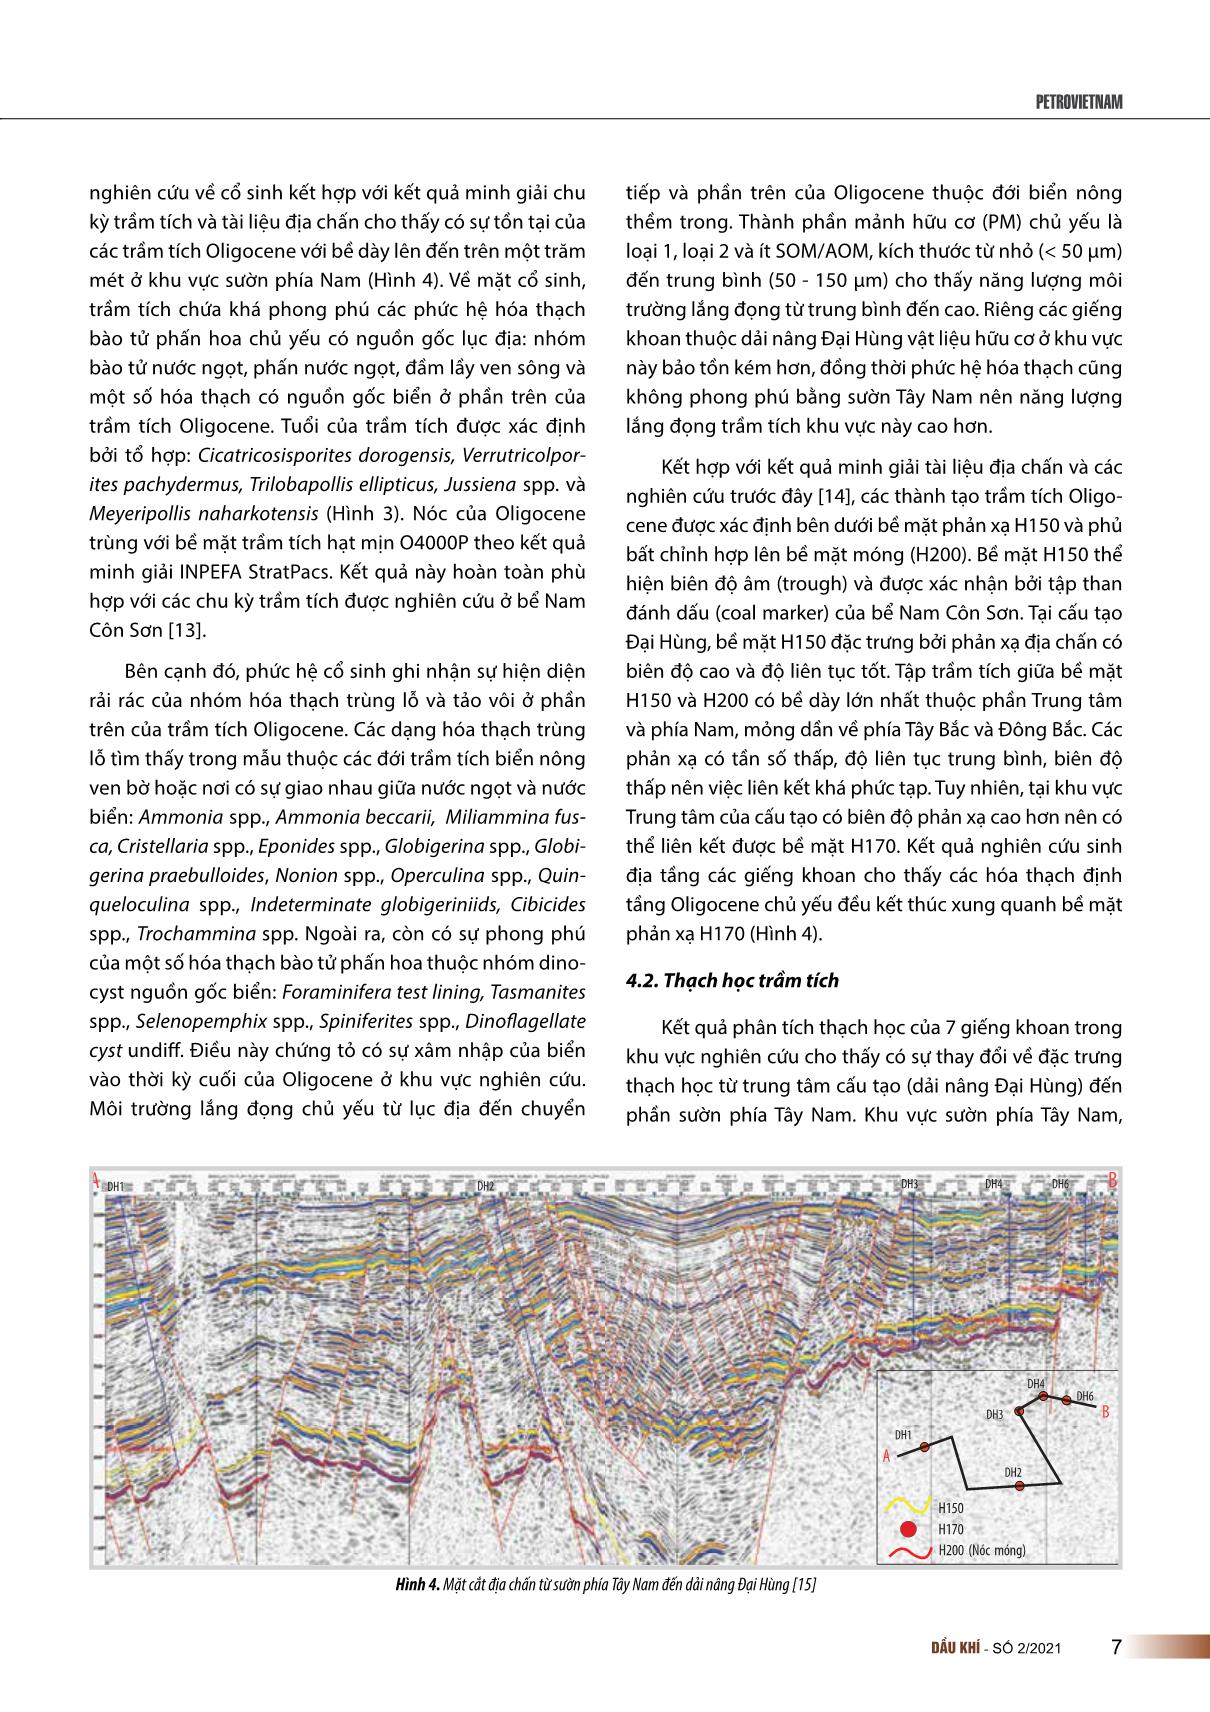 Đặc điểm trầm tích Oligocene khu vực lô 05-1(a) bể Nam Côn Sơn trang 4